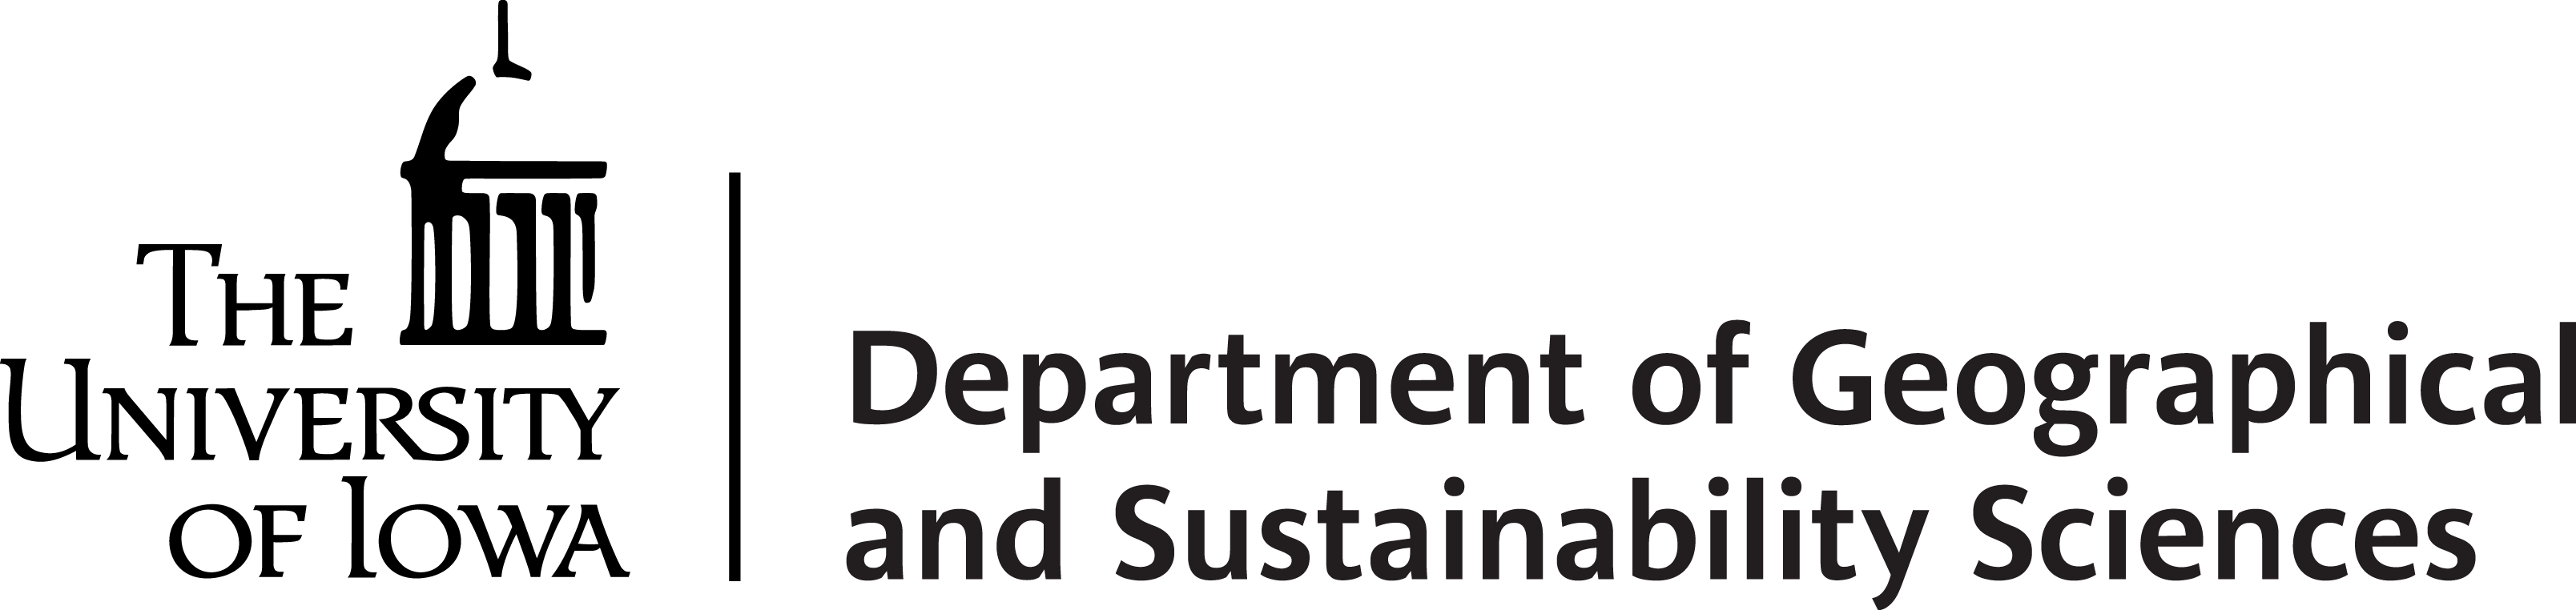 Department logo